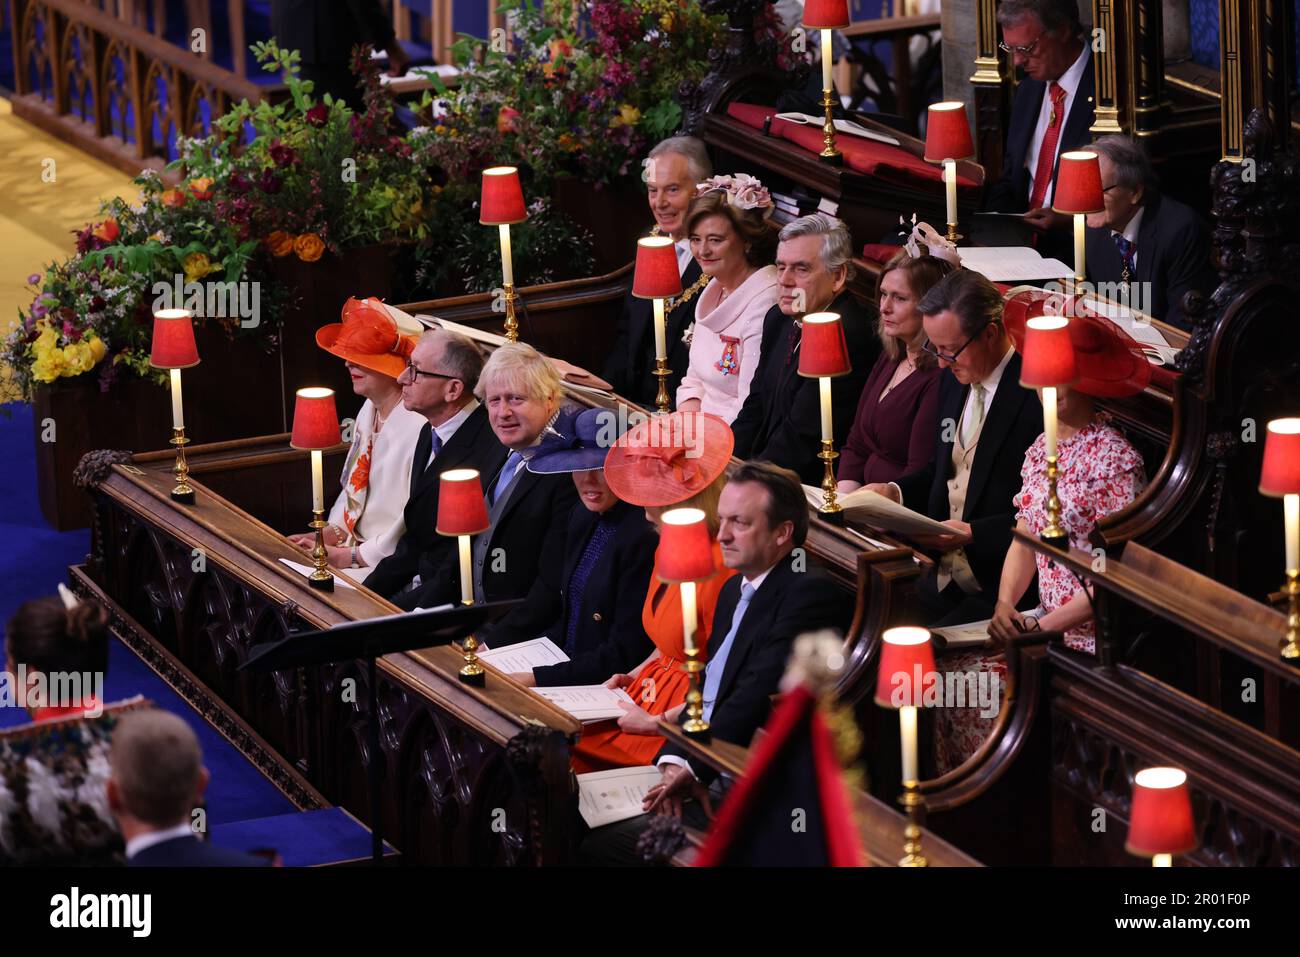 (De gauche à droite) les anciens premiers ministres Sir Tony Blair, Gordon Brown, David Cameron, Theresa May, Boris Johnson et Liz Truss avec leurs partenaires avant le couronnement du roi Charles III et de la reine Camilla à l'abbaye de Westminster, Londres. Date de la photo: Samedi 6 mai 2023. Banque D'Images